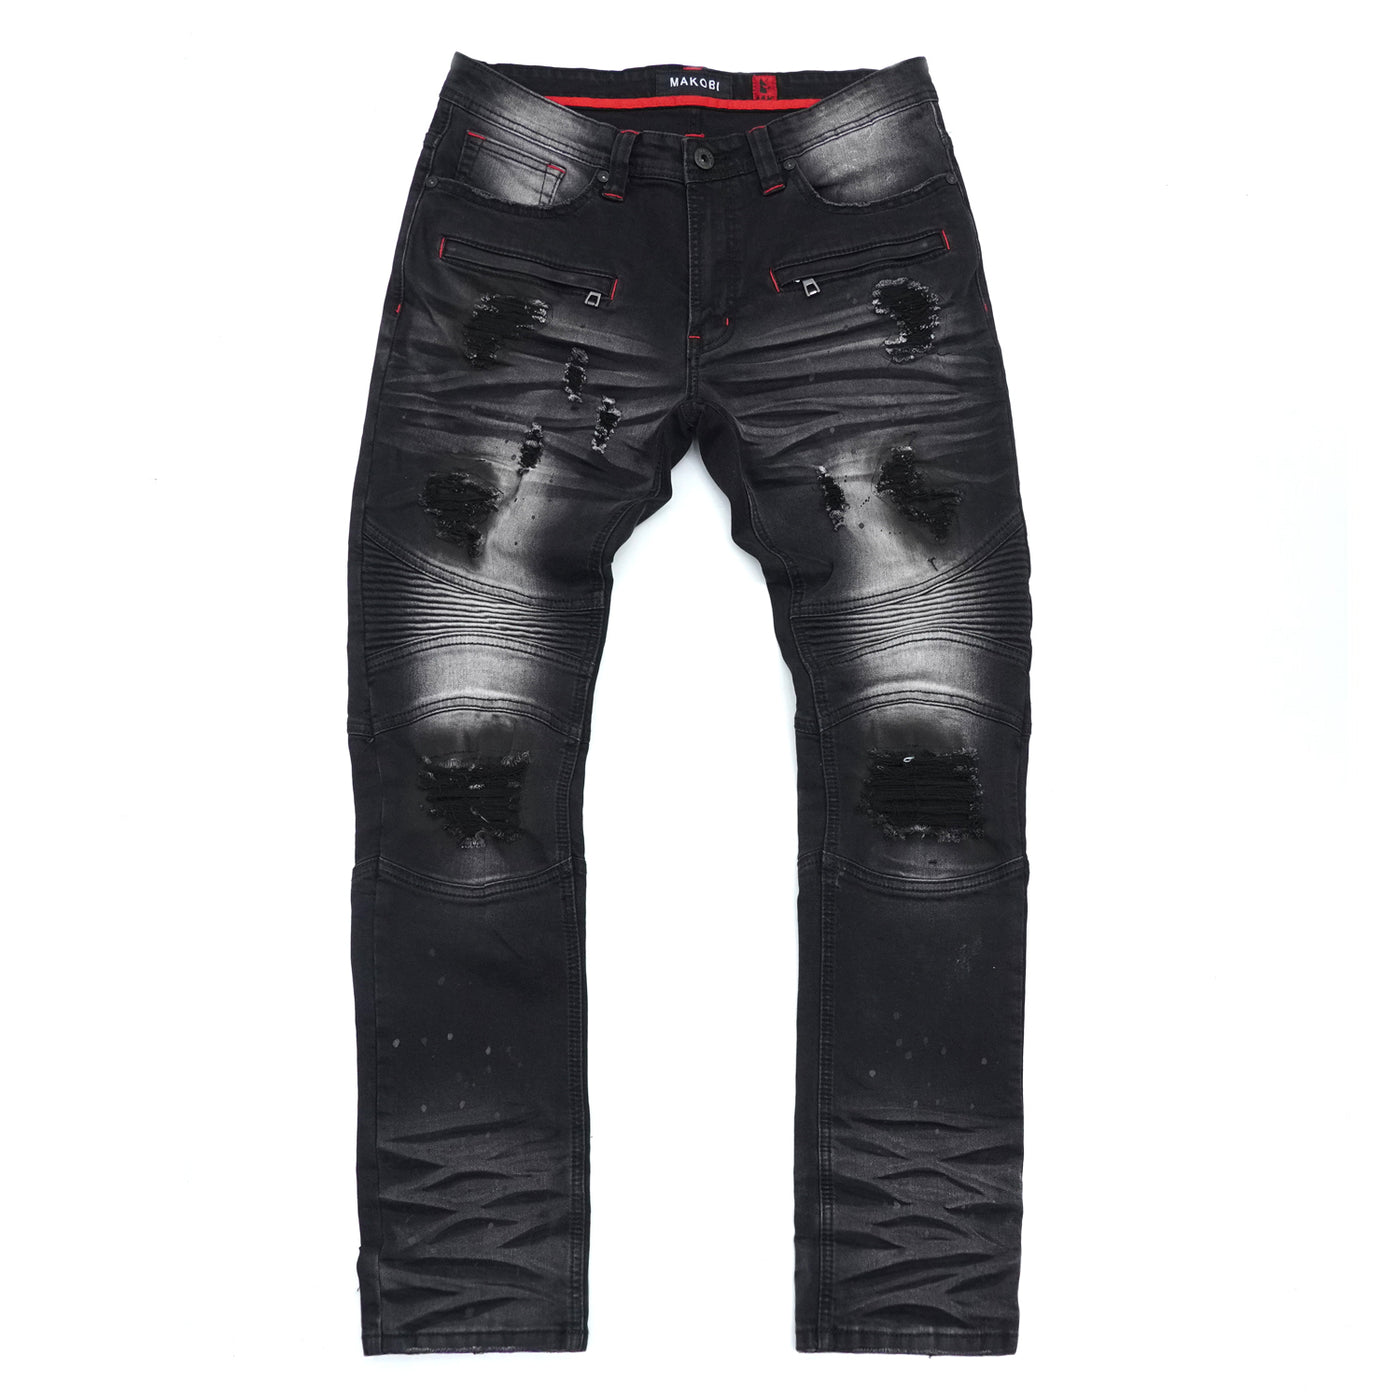 M1924 Makobi Daytona Biker Jeans - Black Wash – Makobi Jeans USA